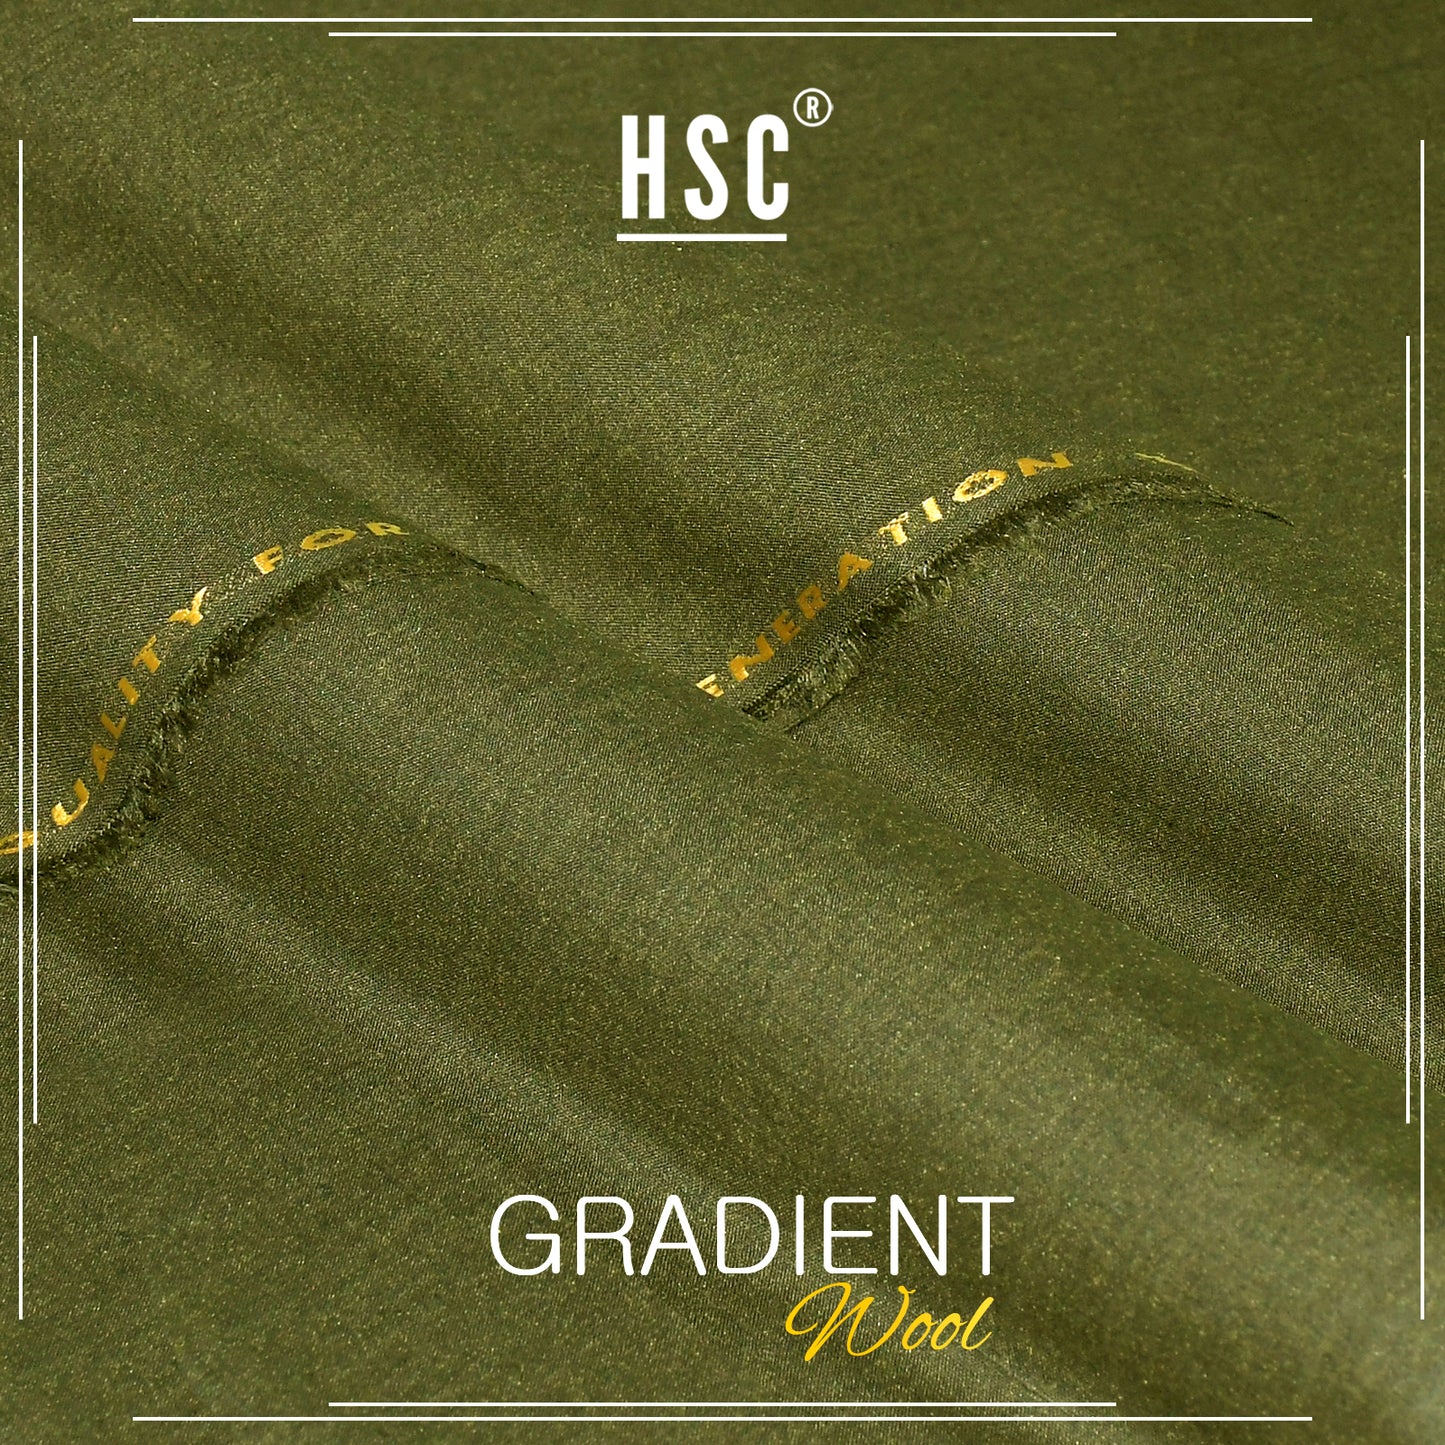 Buy1 Get 1 Free Gradient Wool For Men - GW4 HSC